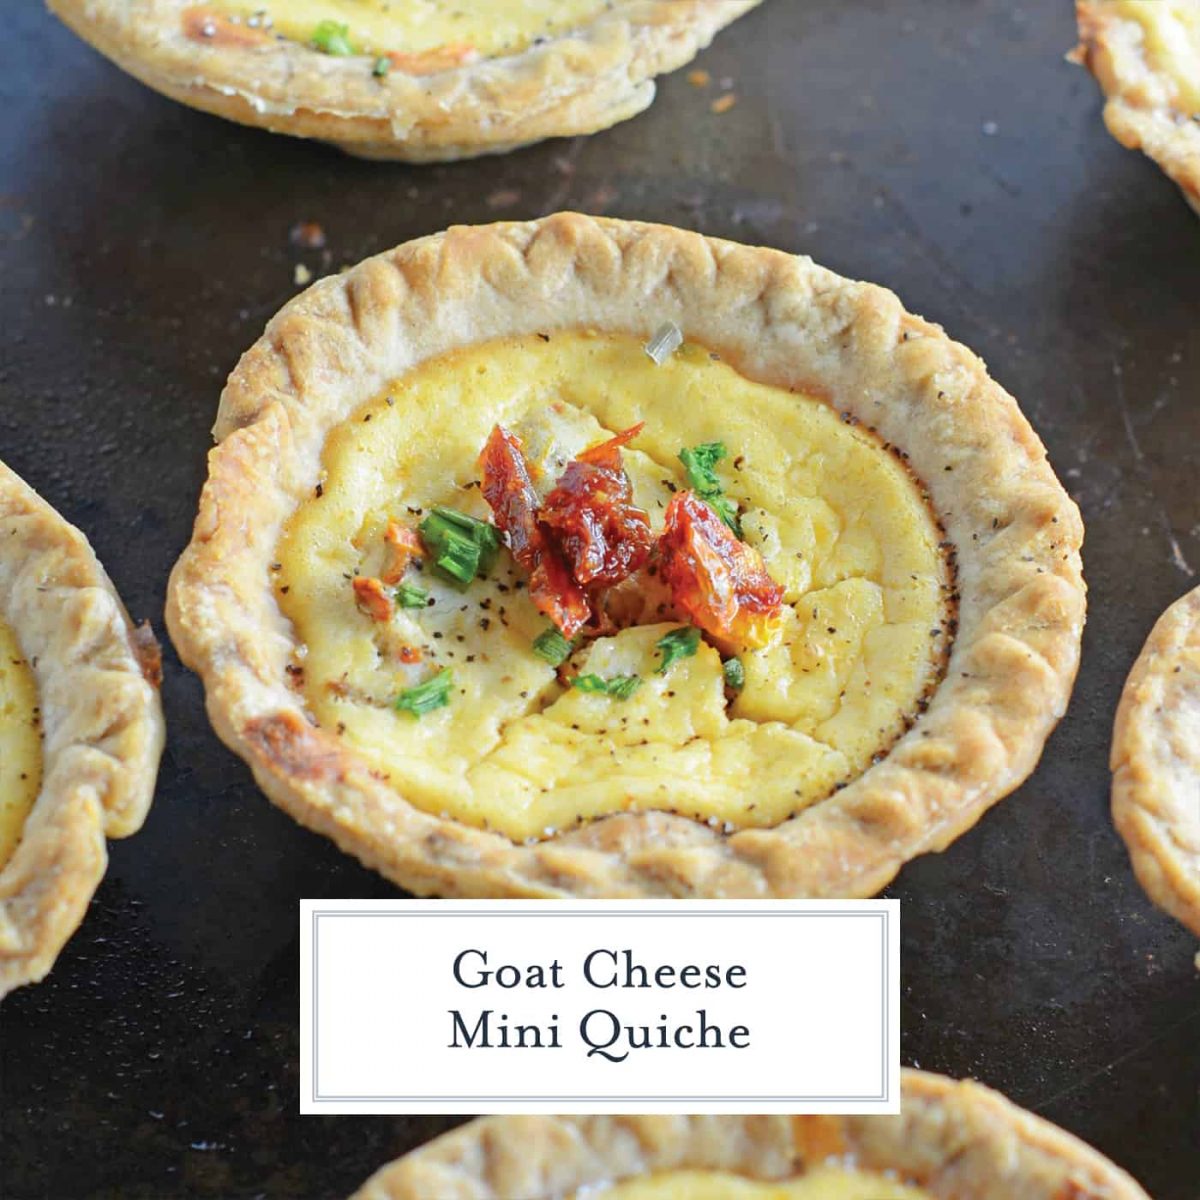 Mini Quiche - Vegetarian Quiche Recipe with Goat Cheese